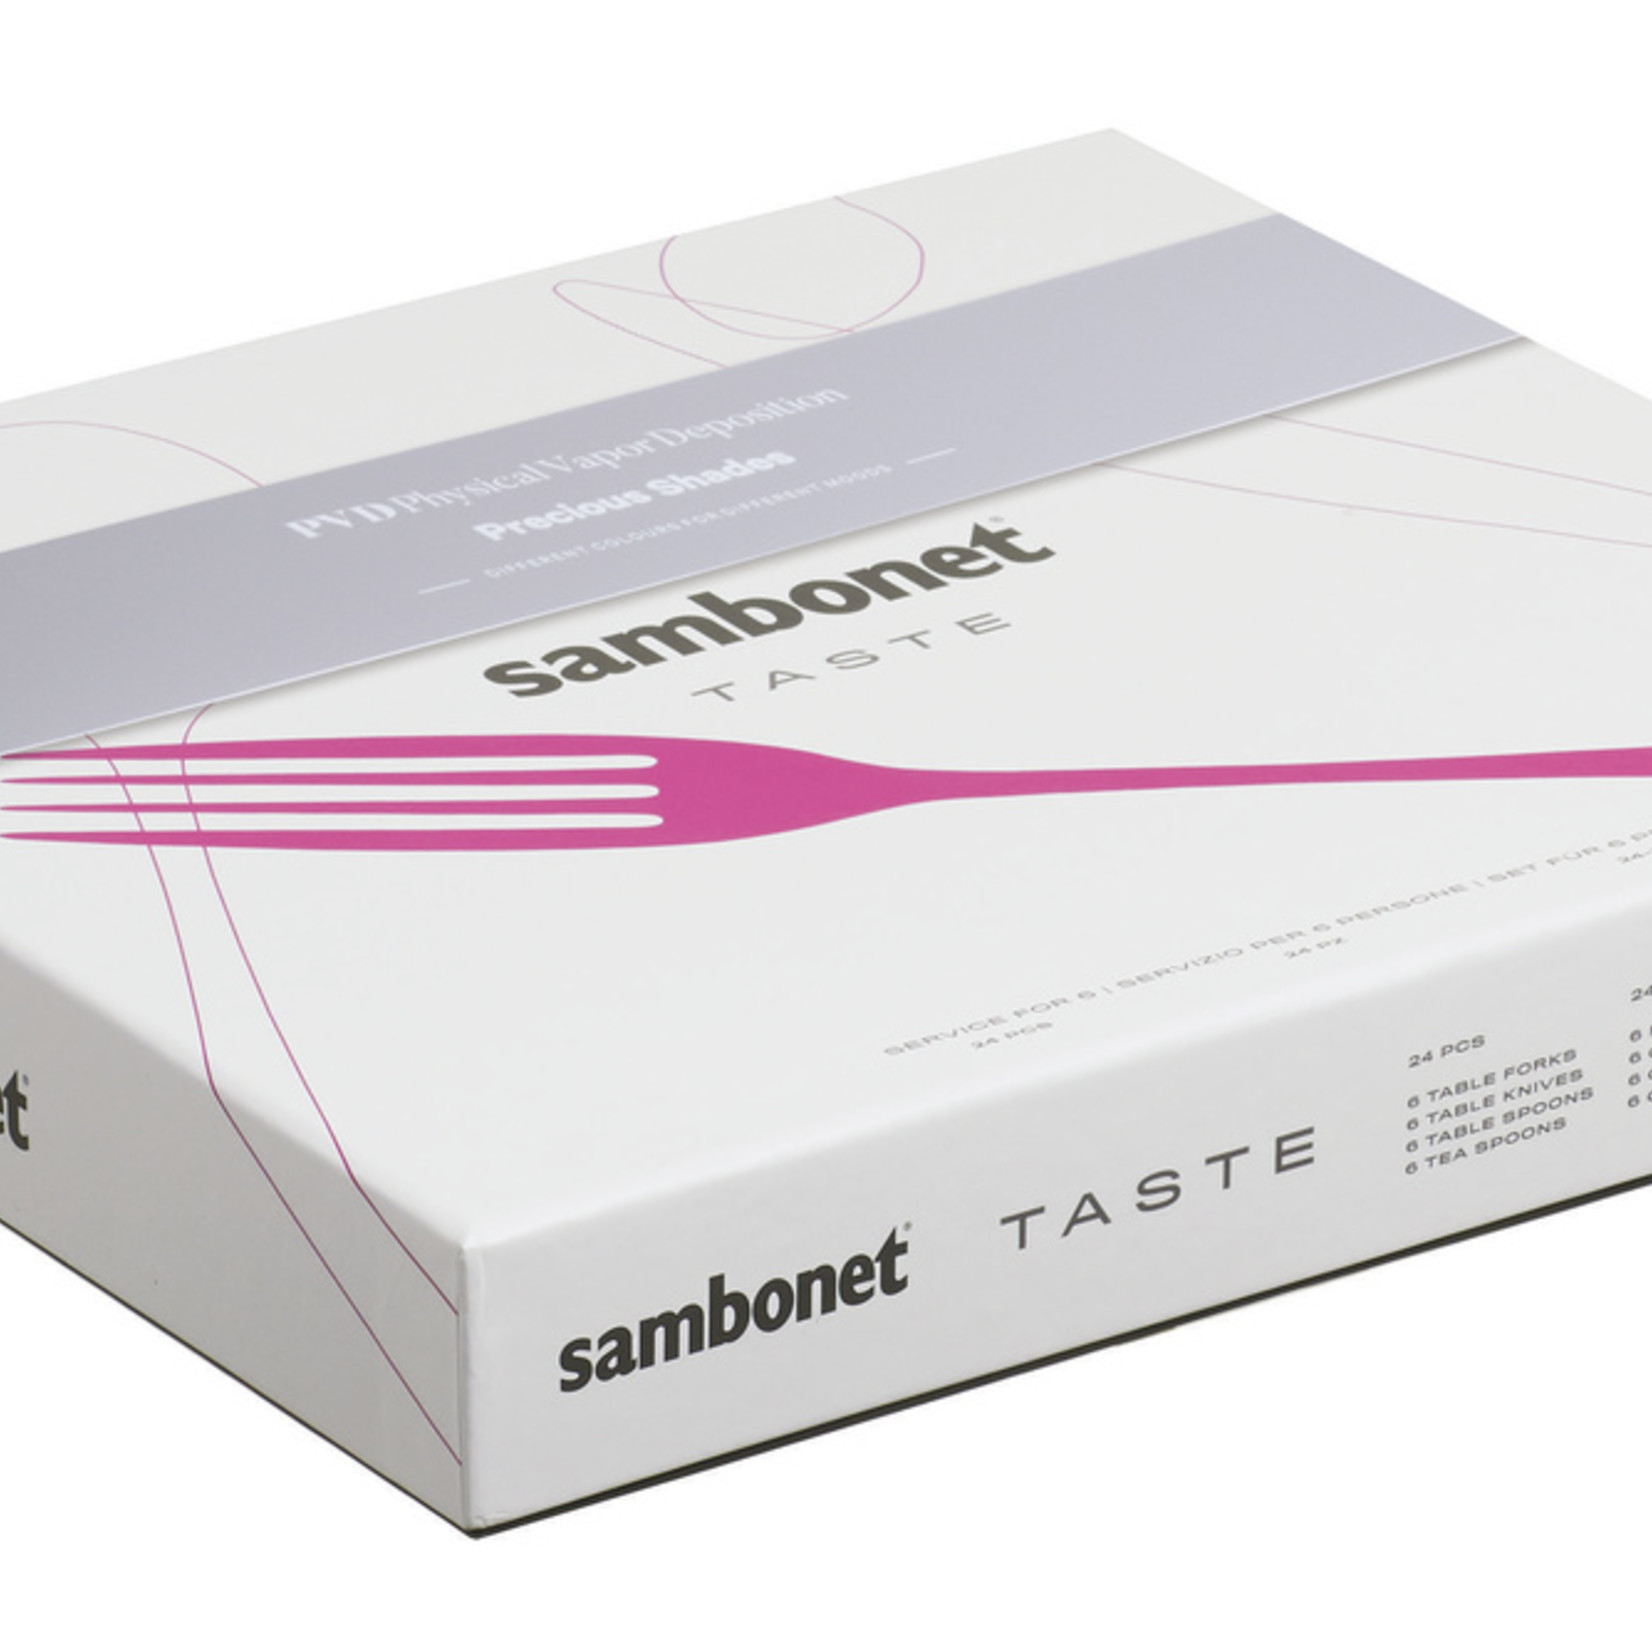 Sambonet Sambonet Taste Champage 24 pcs (52553P81)